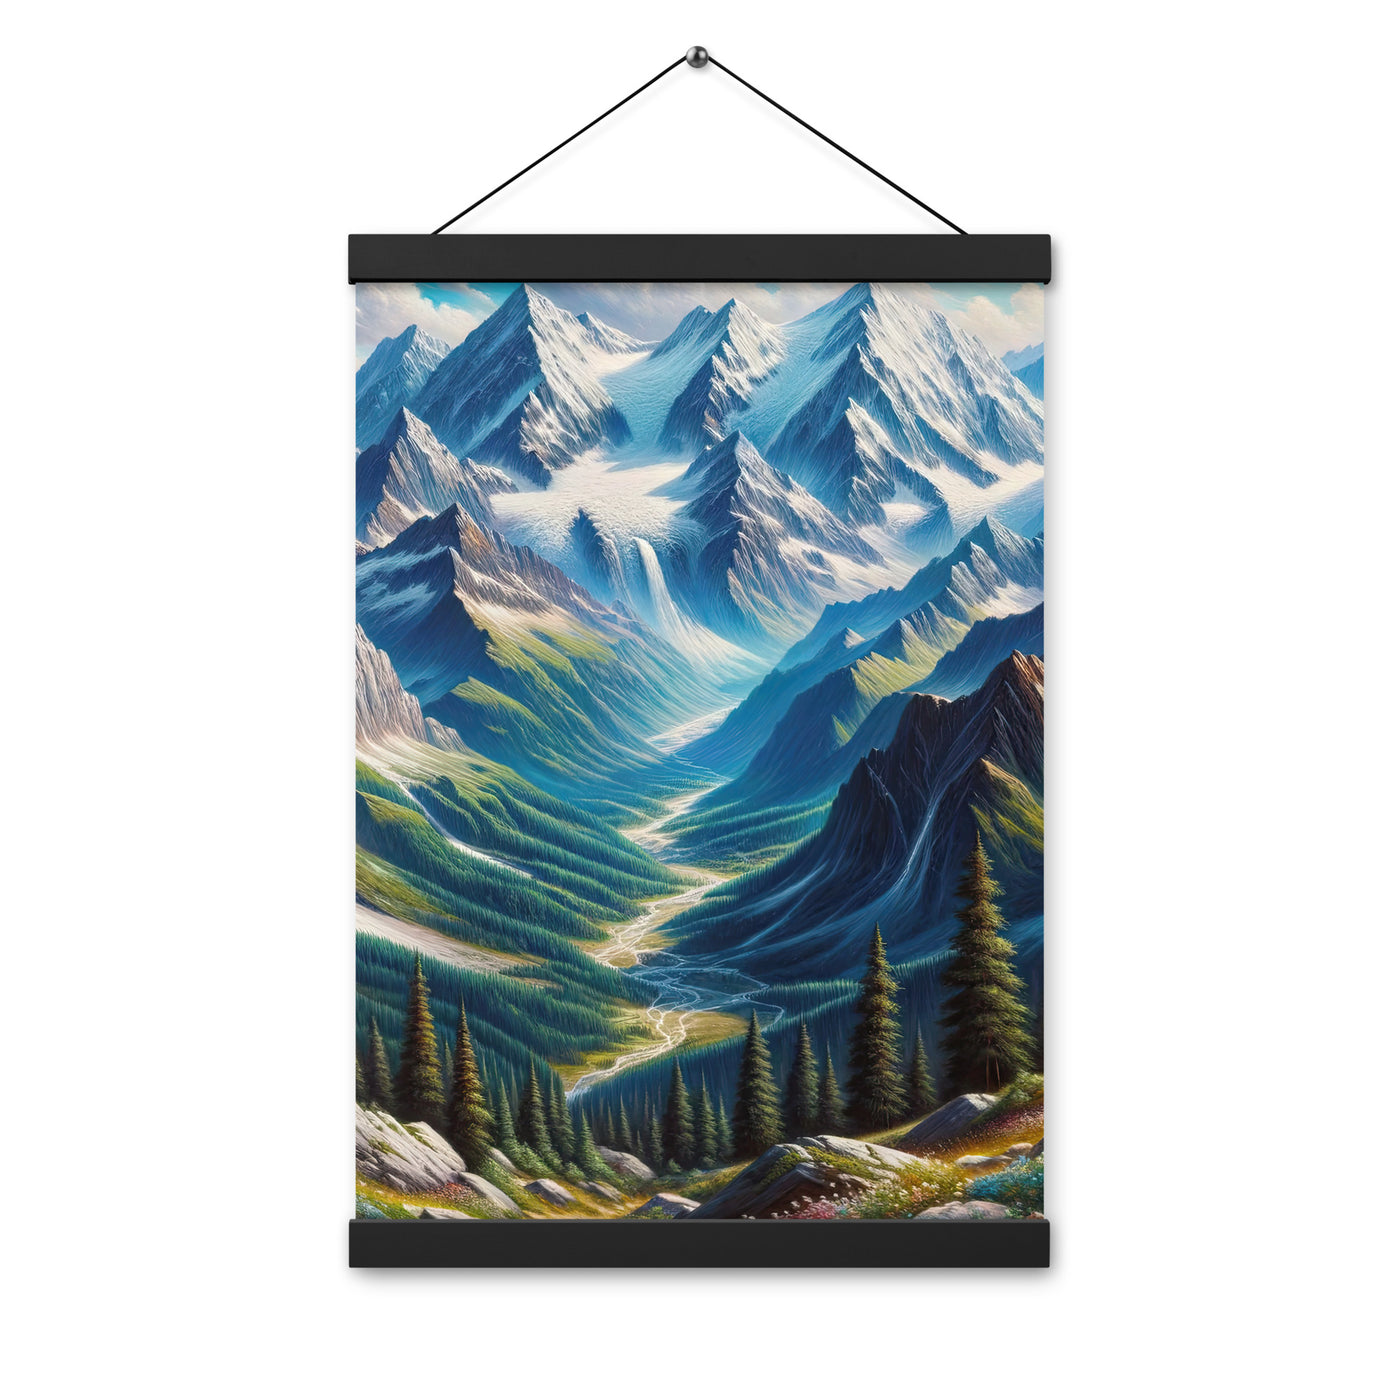 Panorama-Ölgemälde der Alpen mit schneebedeckten Gipfeln und schlängelnden Flusstälern - Premium Poster mit Aufhängung berge xxx yyy zzz 30.5 x 45.7 cm